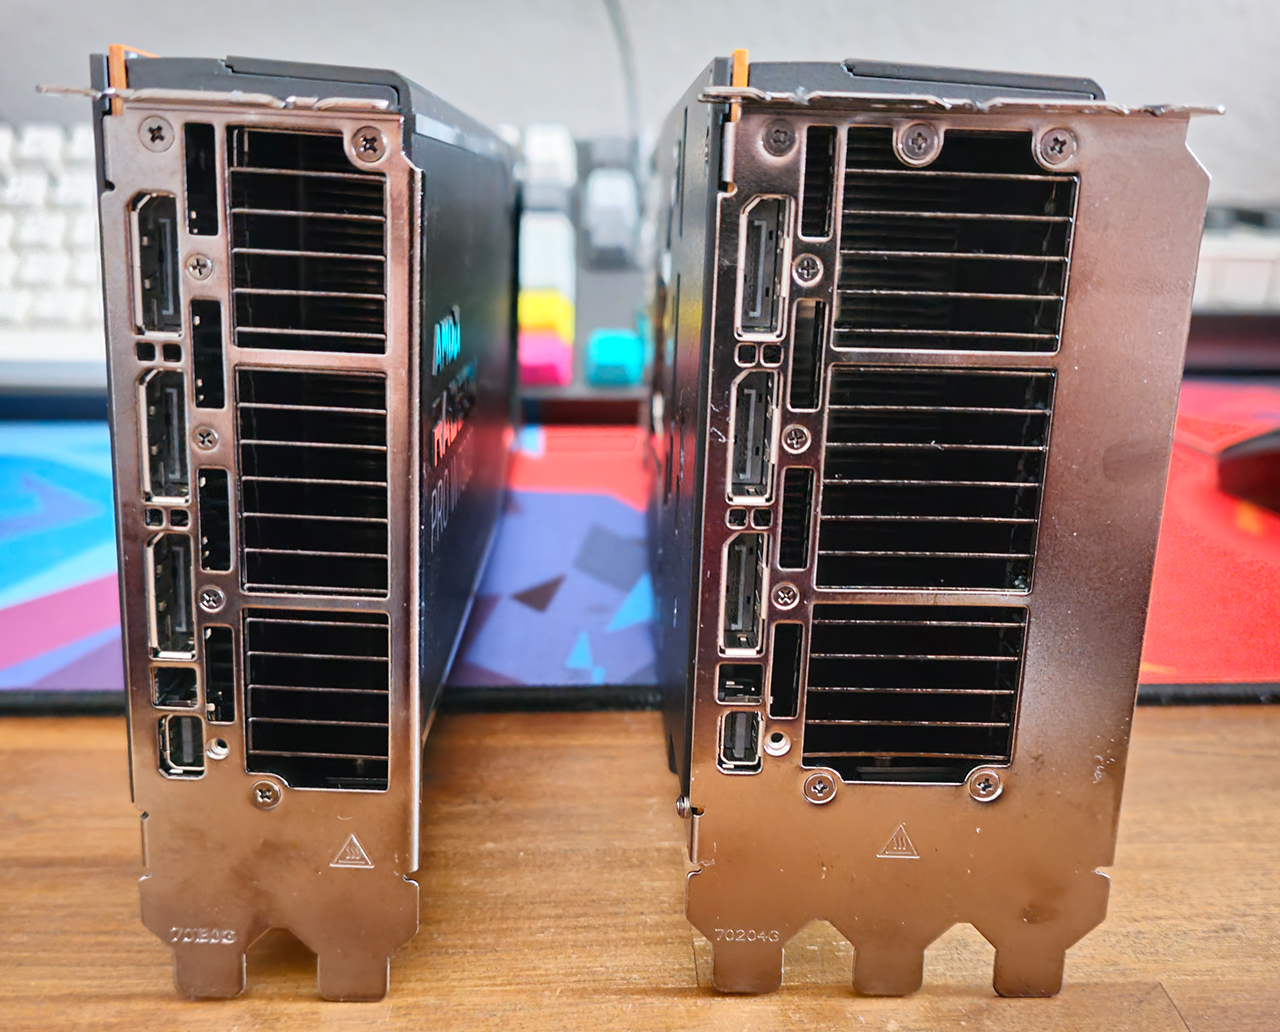 AMD Radeon Pro W7900 W7800 Review